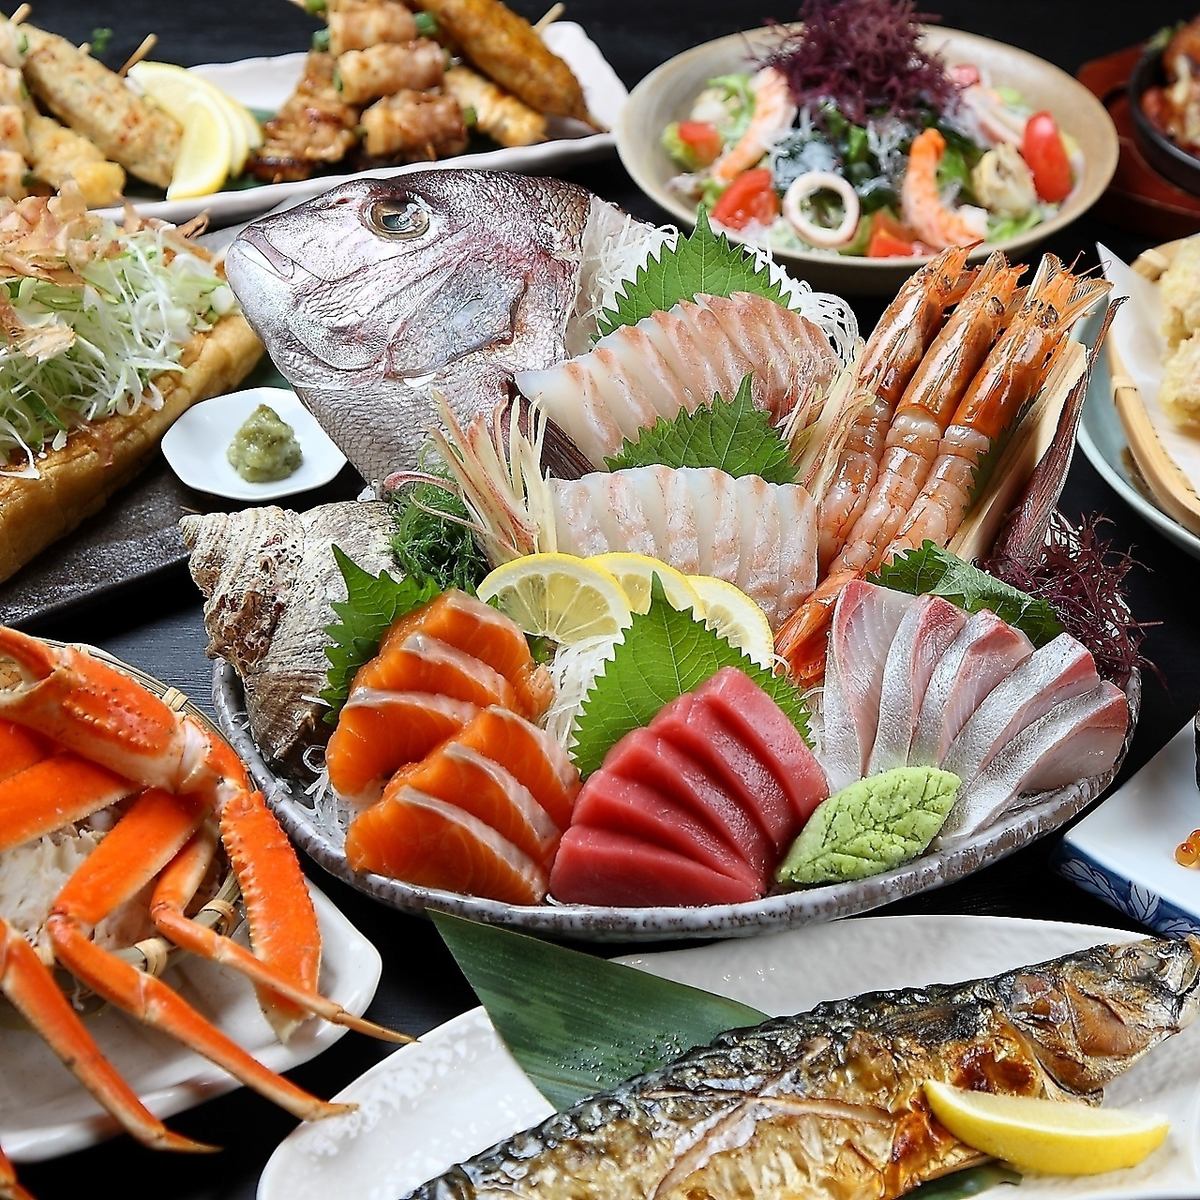 讲究新鲜度和品质的鲜鱼拼盘是本店的招牌菜之一。